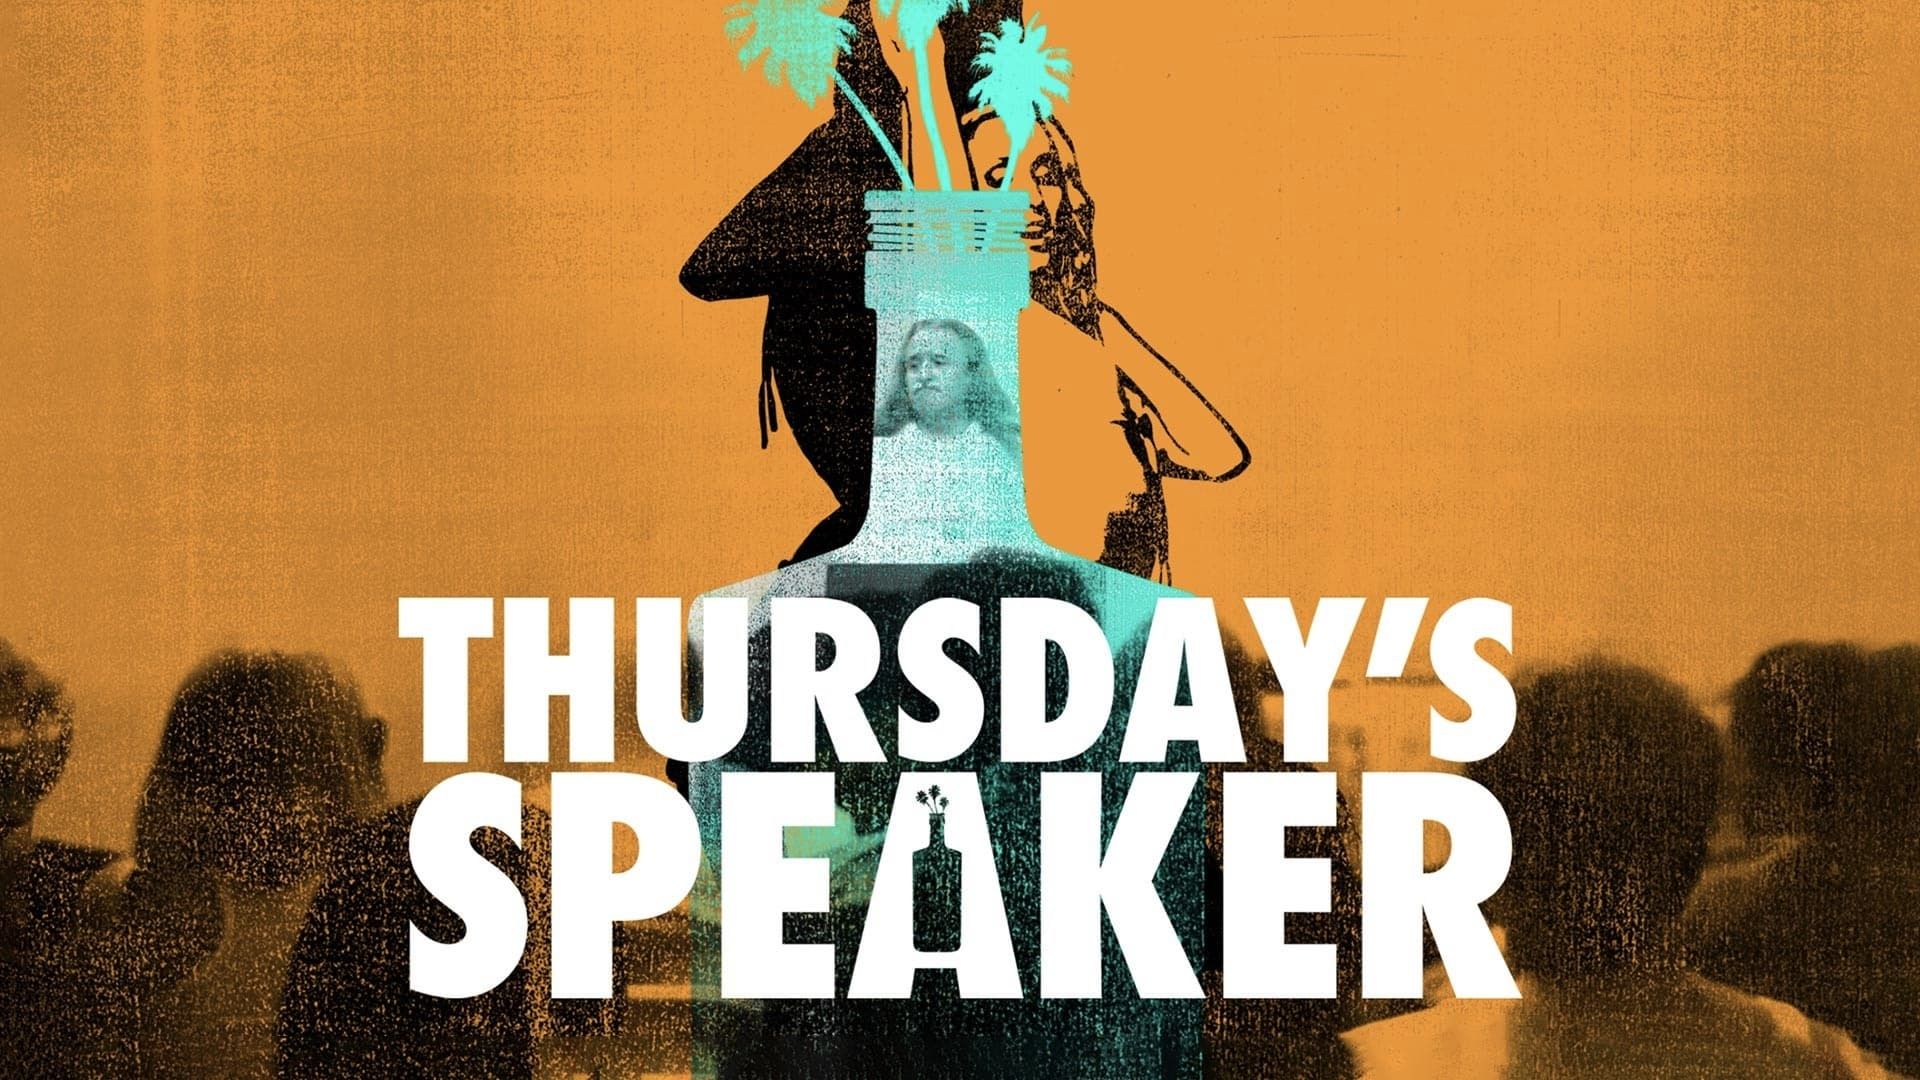 Thursday's Speaker background